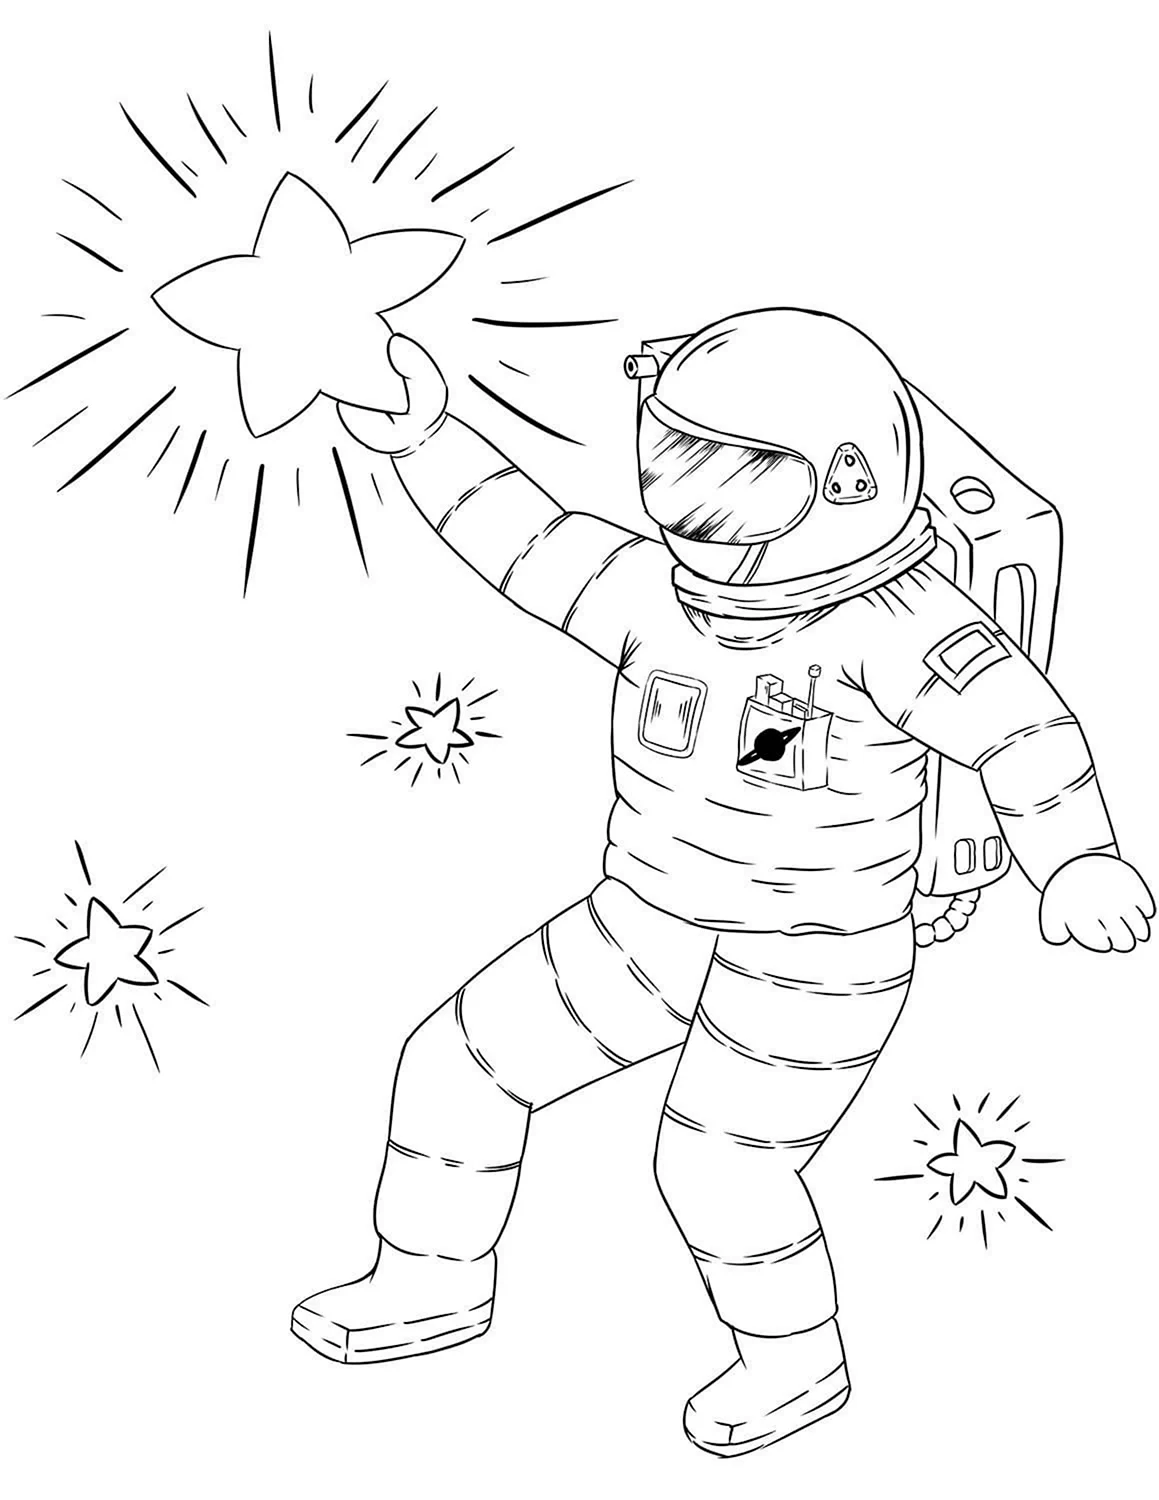 Космос раскраска для детей. Космонавт раскраска. Космонавт раскраска для детей. Космонавтика раскраски для детей. Рисунки на день космонавтики легкие для срисовки